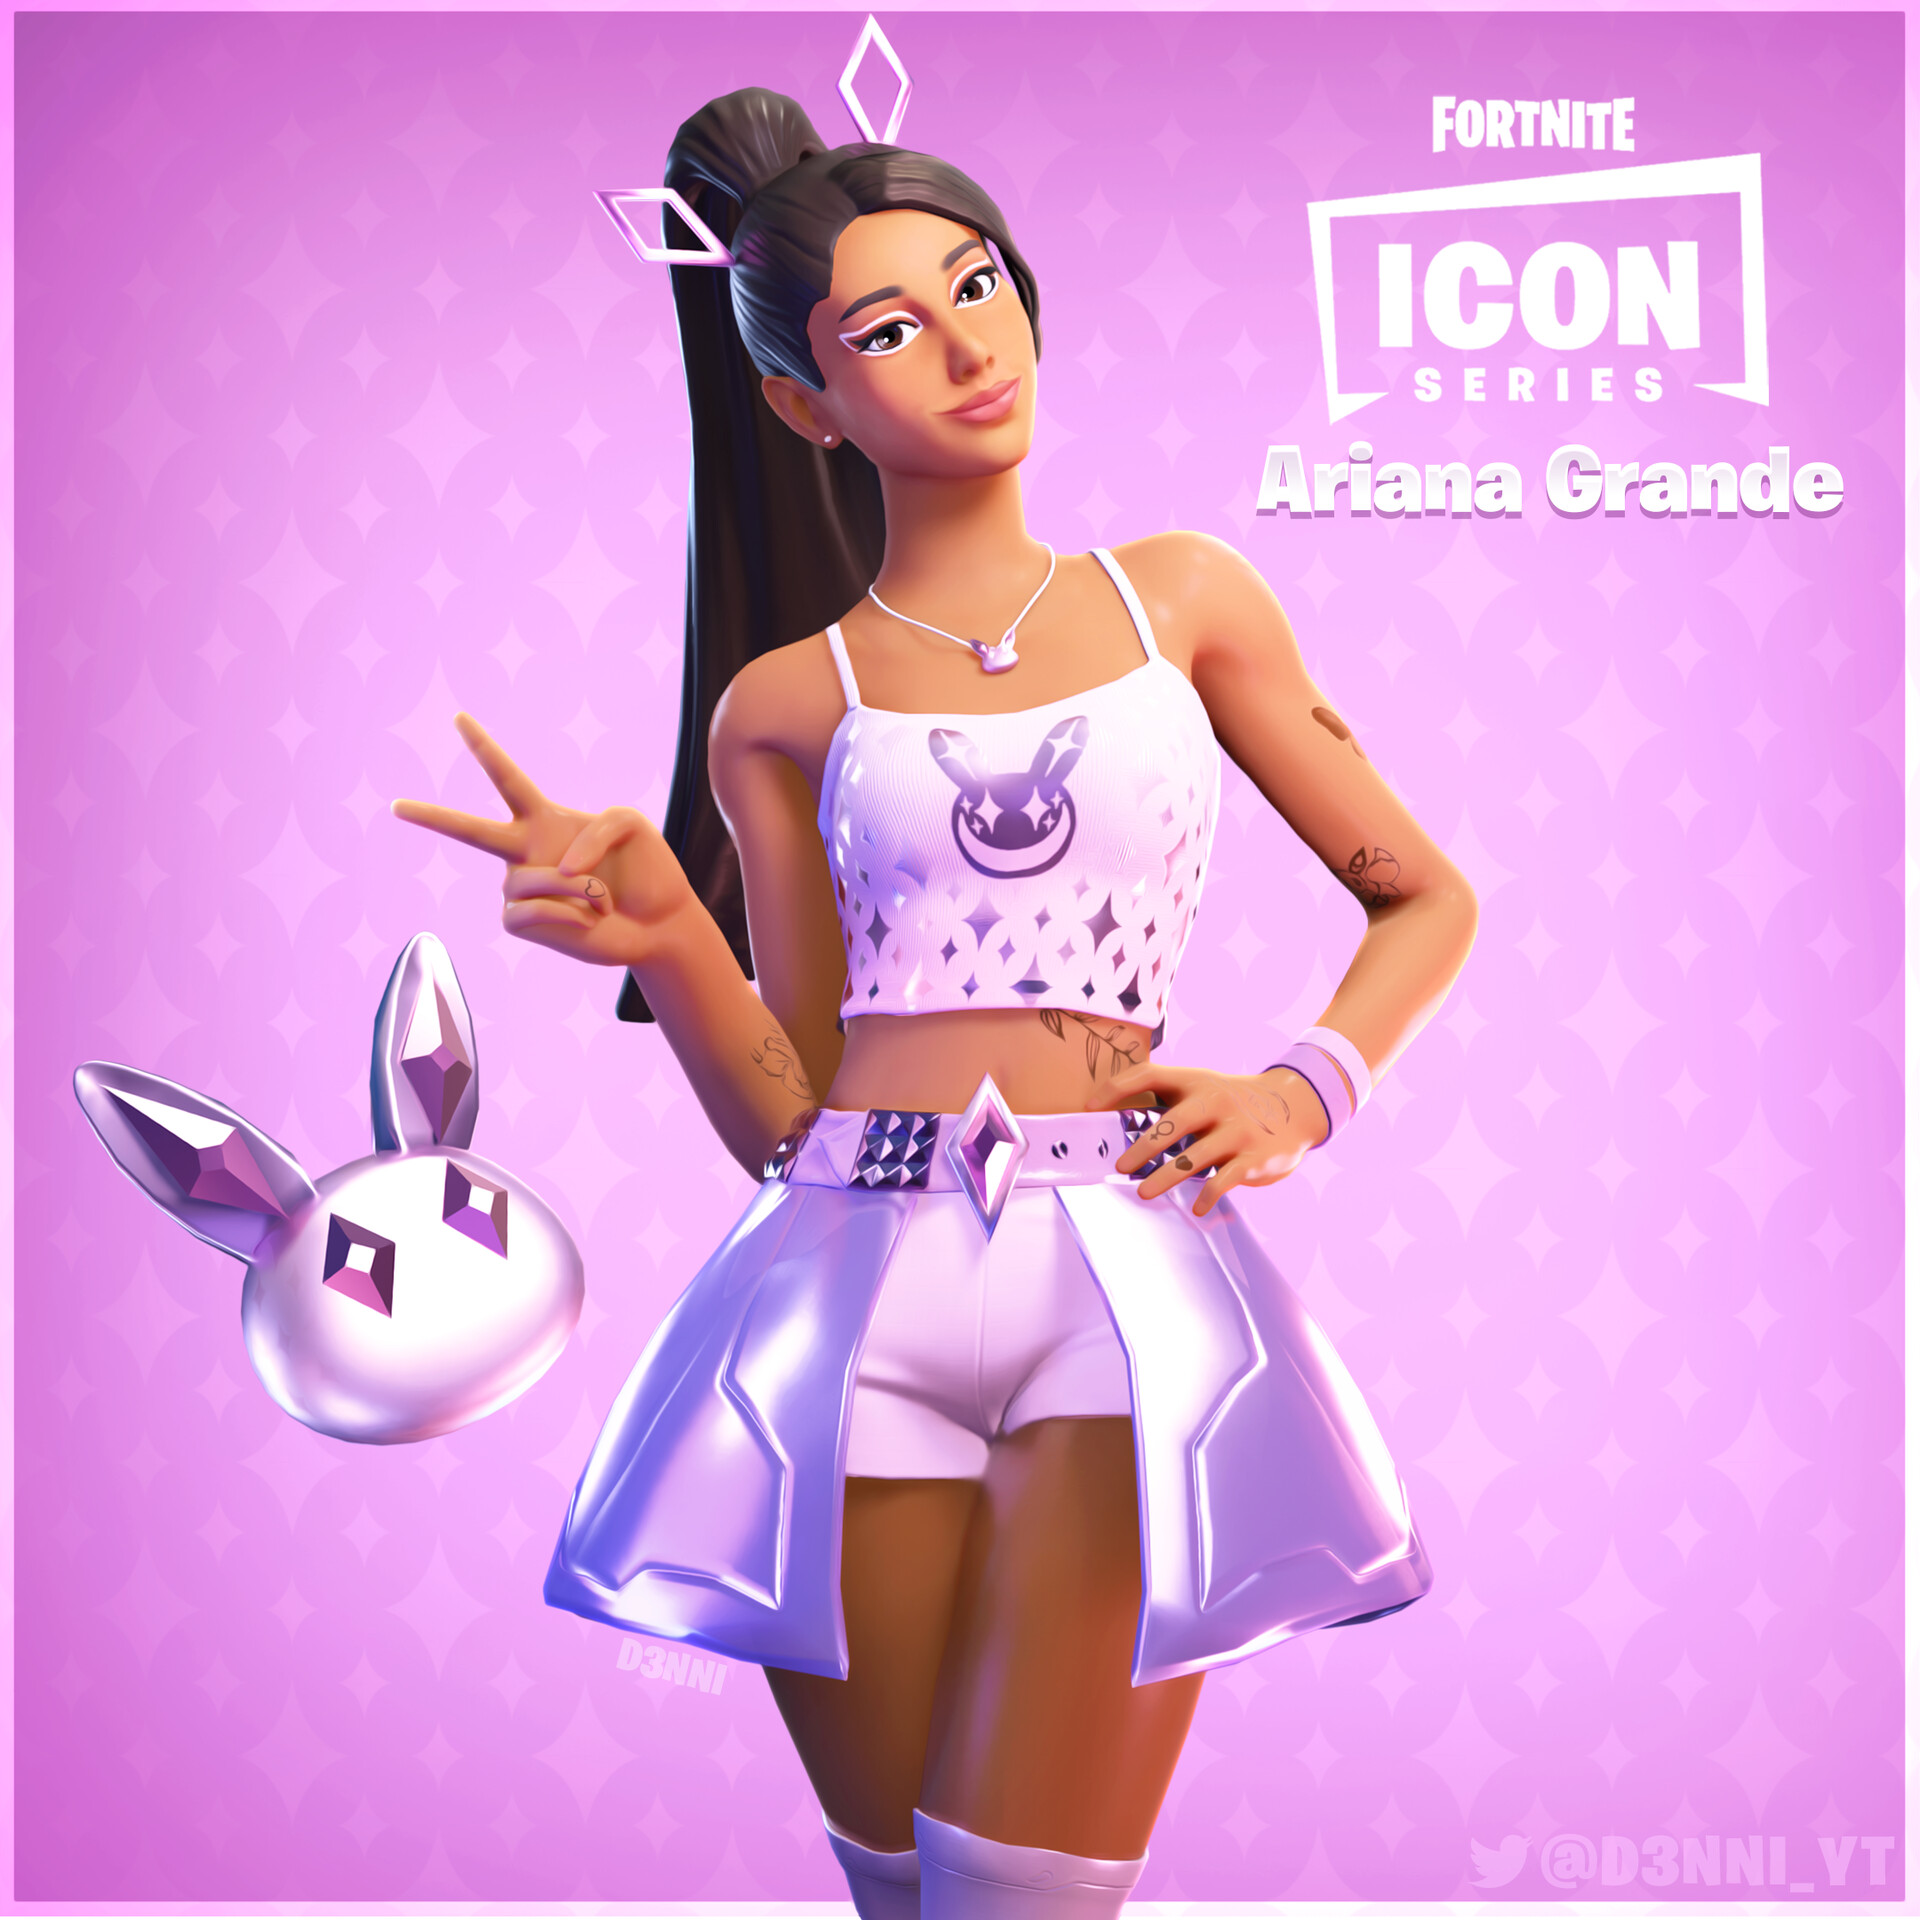 D3nni Fortnite Skin Concept Ariana Grande [icon Series]